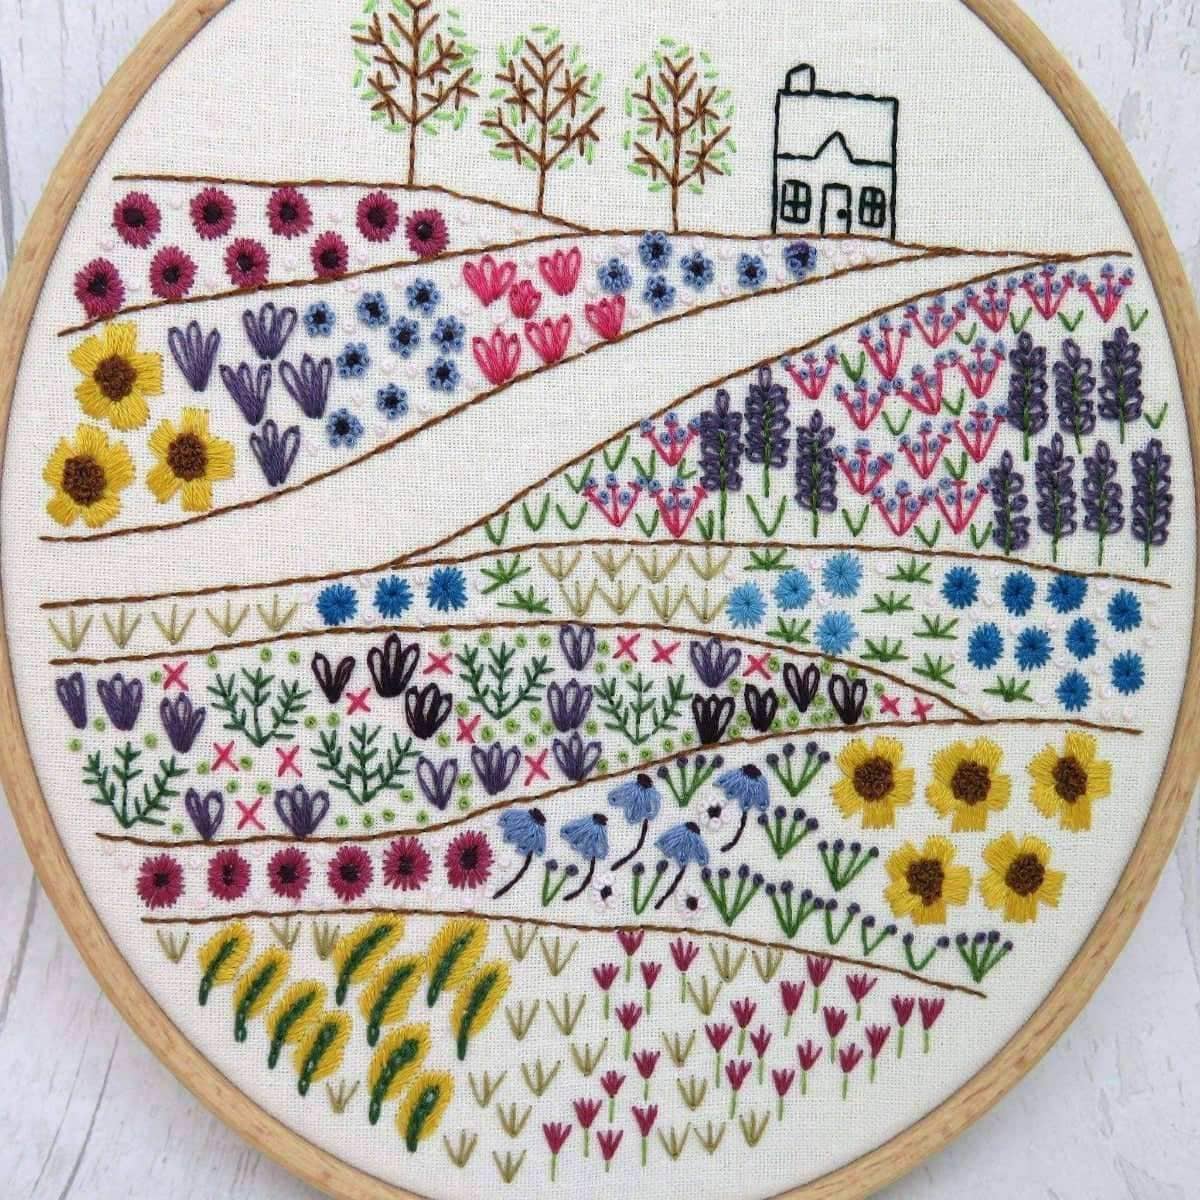 3 Pack Beginner Embroidery Kit Modern Flower Embroidery Kit Flowers  Embroidery Kit DIY Hand Embroidery Full Kit Cross Stitch Set 